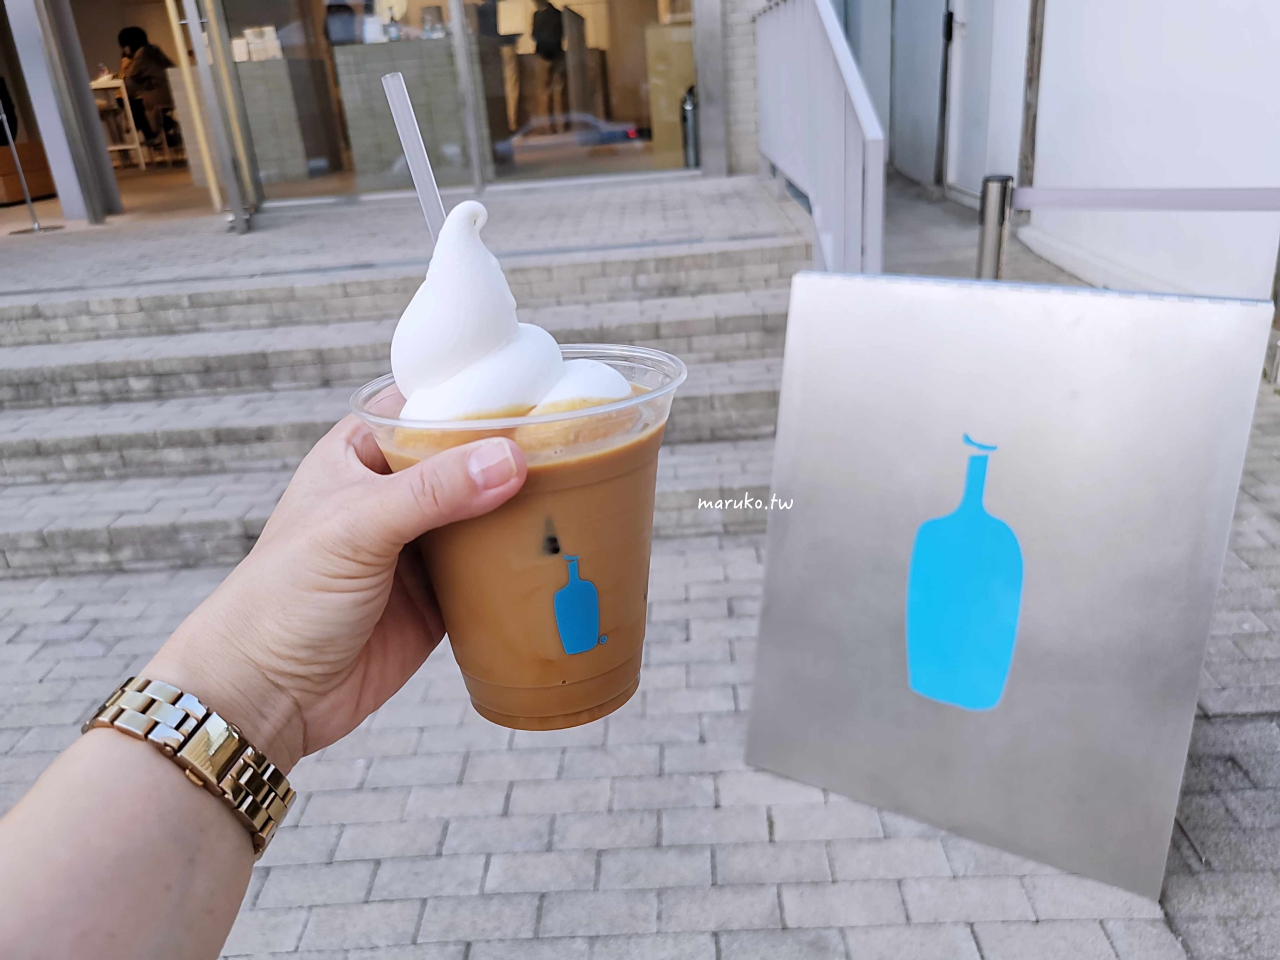 【首爾】Blue Bottle 藍瓶咖啡 可眺望景福宮與韓屋村的景觀咖啡三清洞店